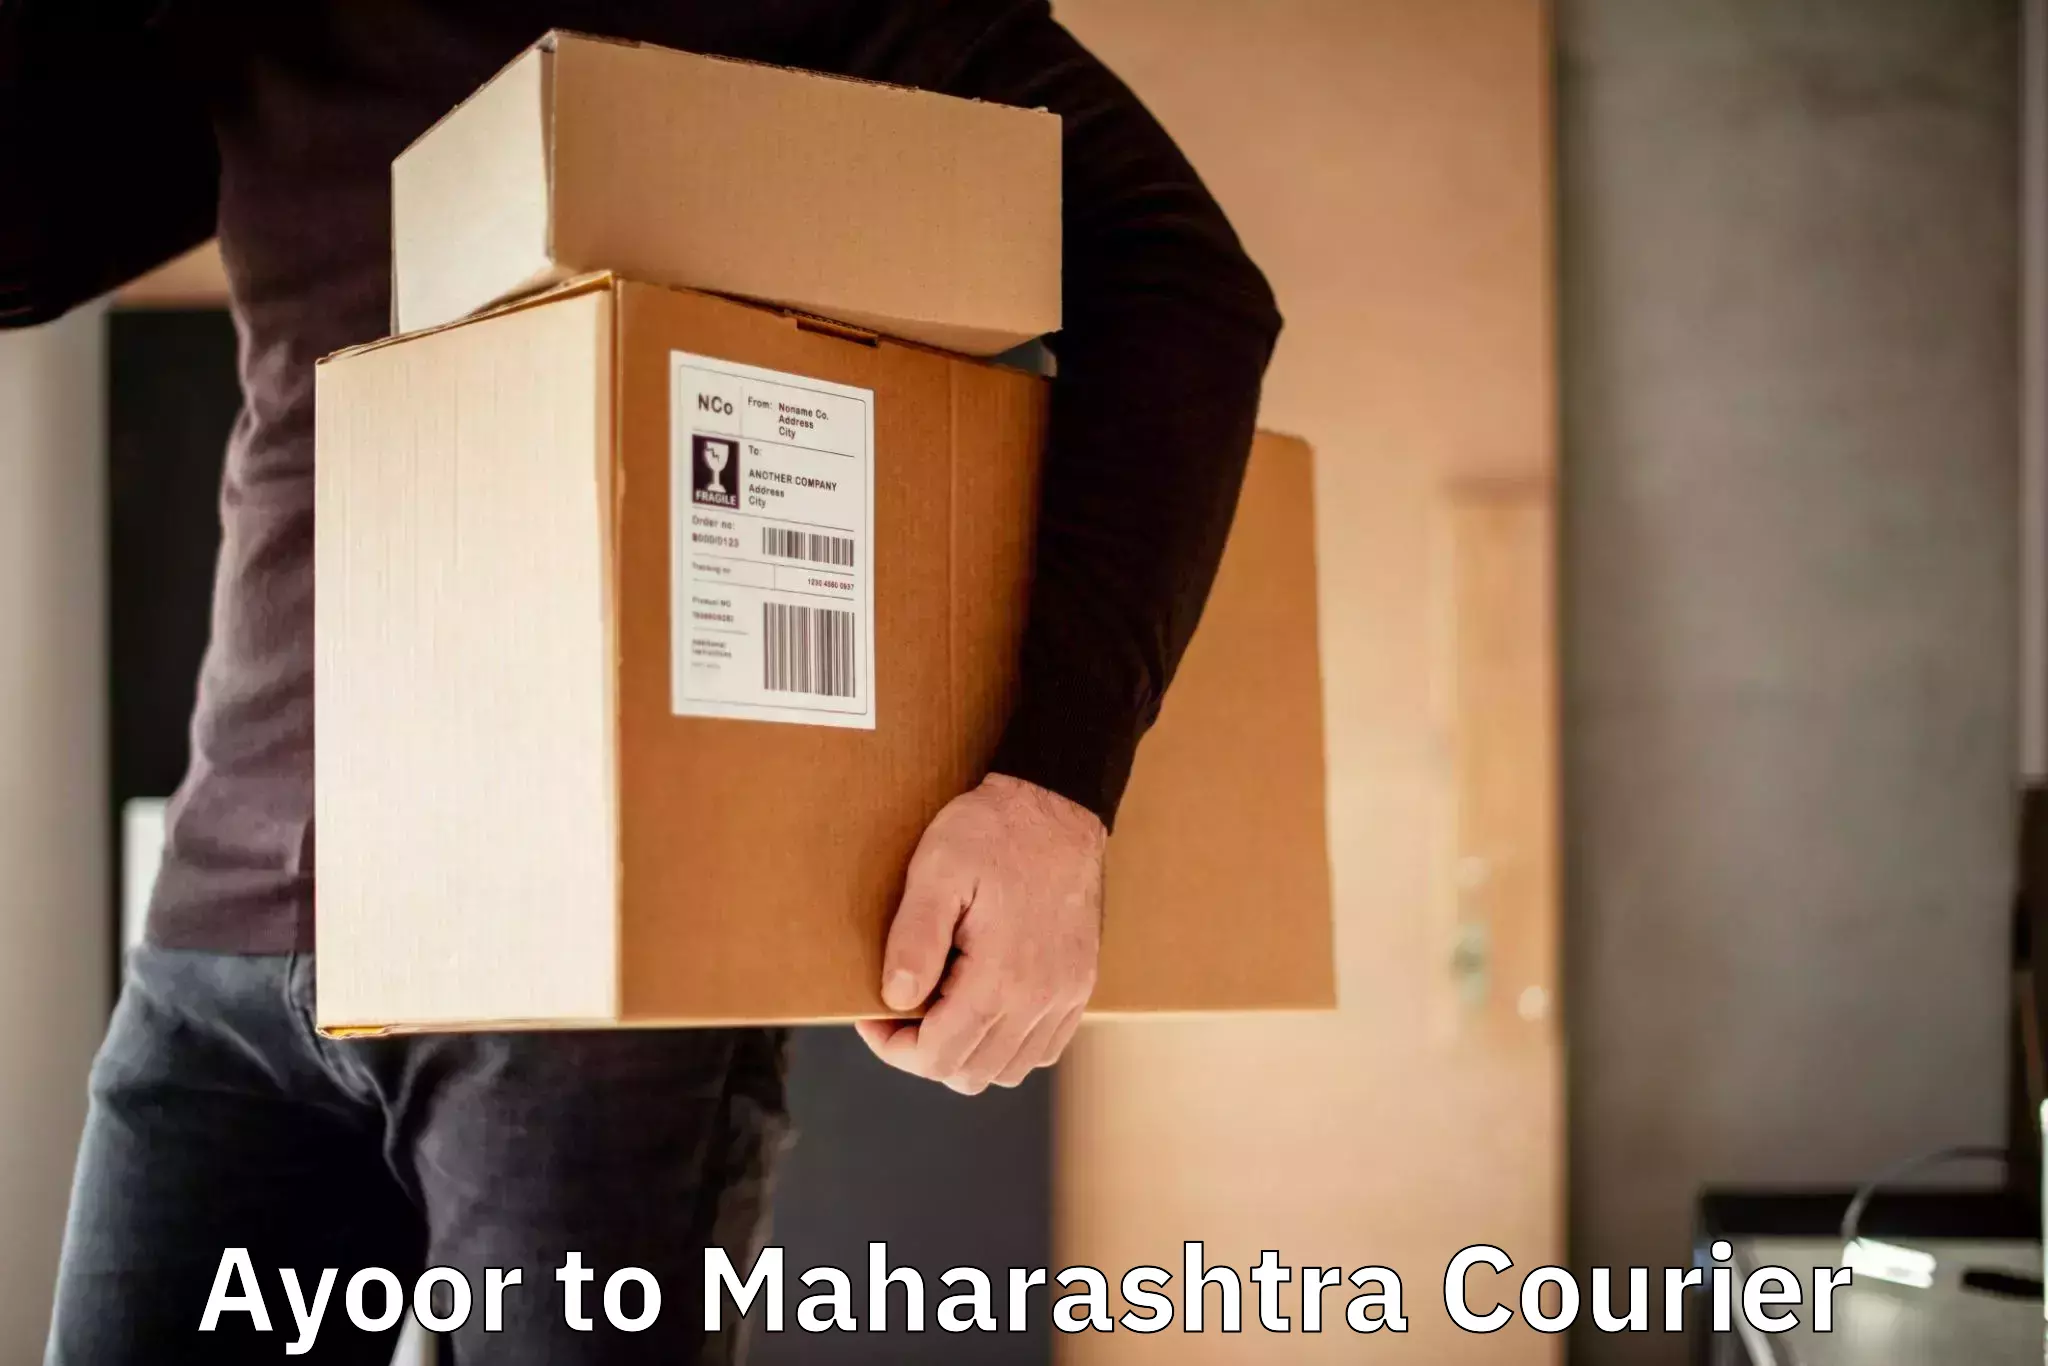 Seamless shipping experience Ayoor to Maharashtra